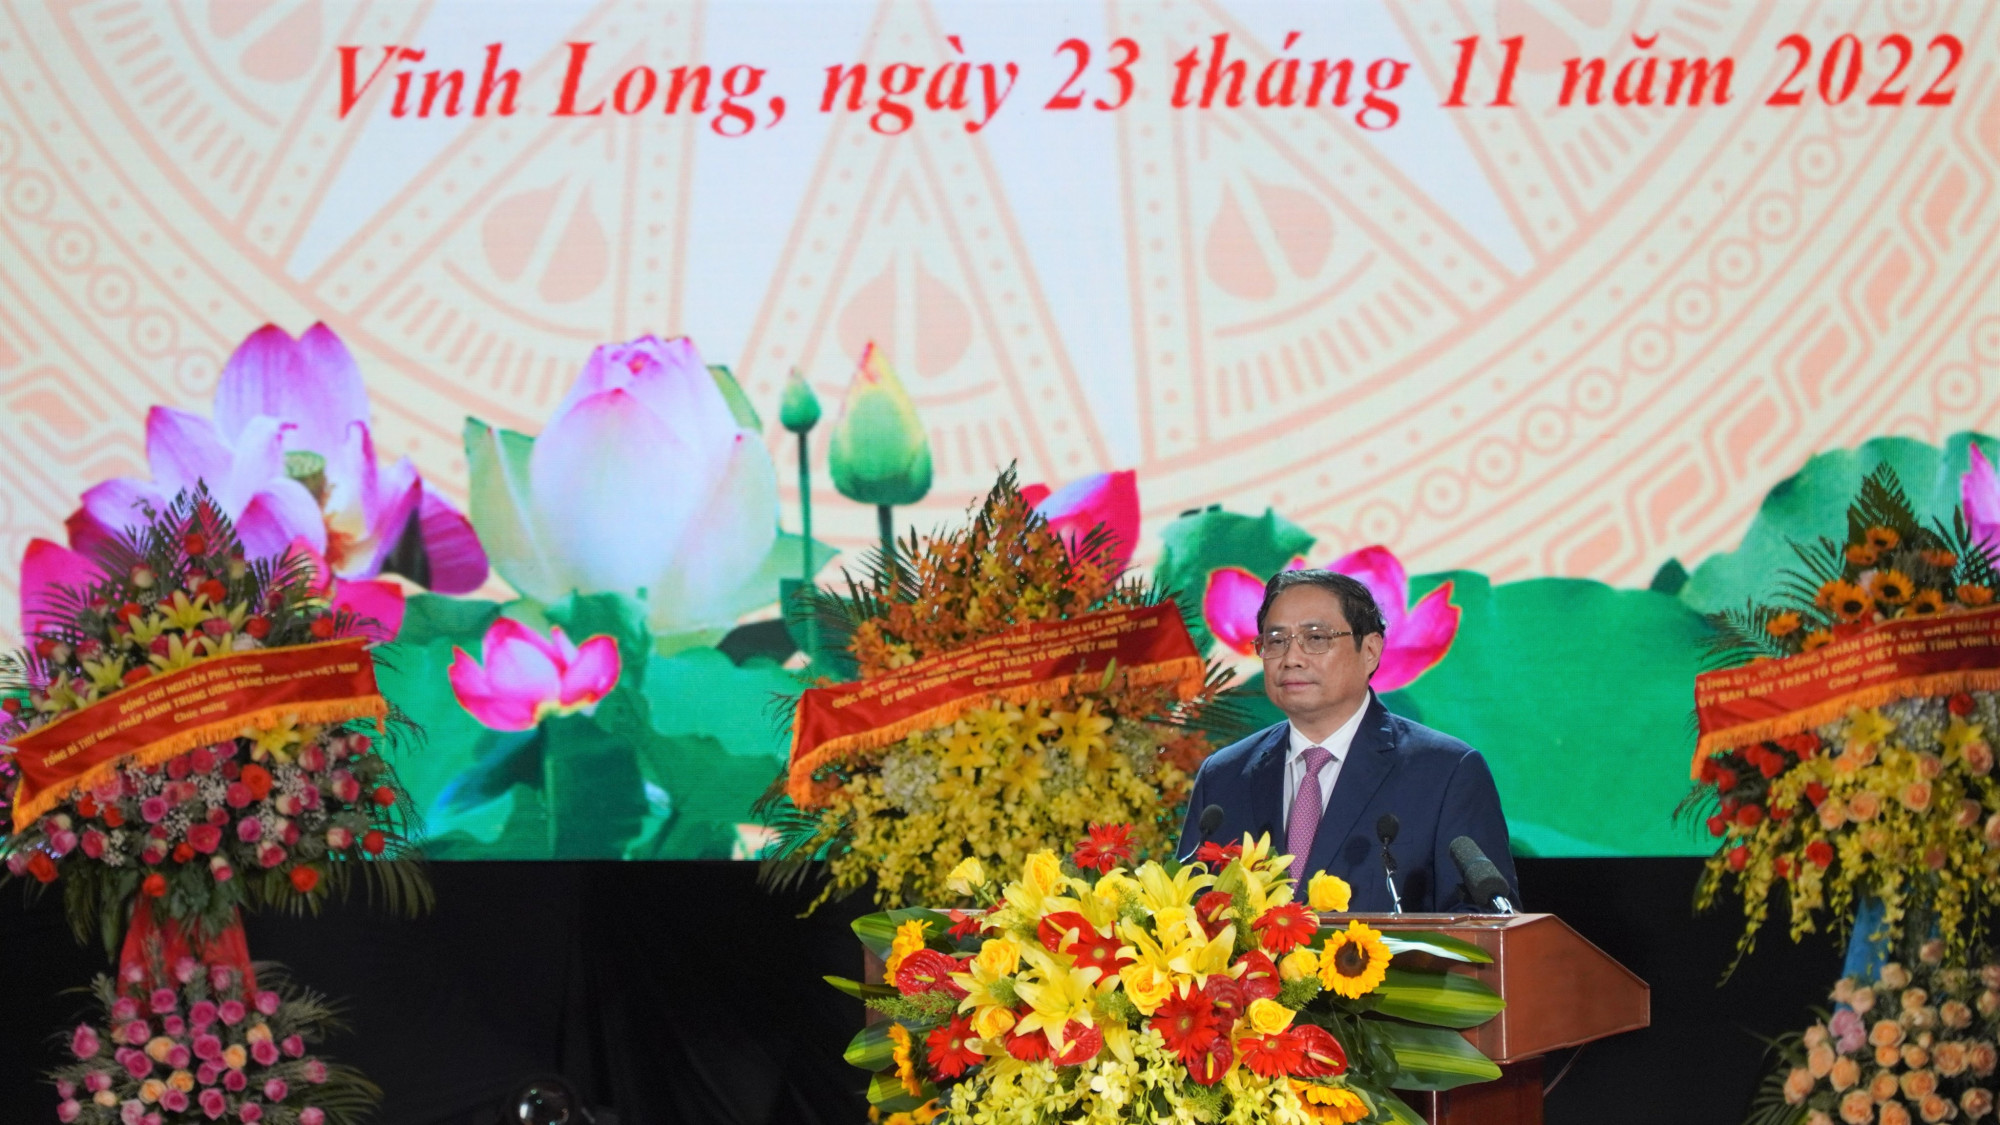 Thủ tướng Phạm Minh Chính phát biểu tại Lễ kỷ niệm 100 năm ngày sinh Thủ tướng Võ Văn Kiệt vào sáng 23/11